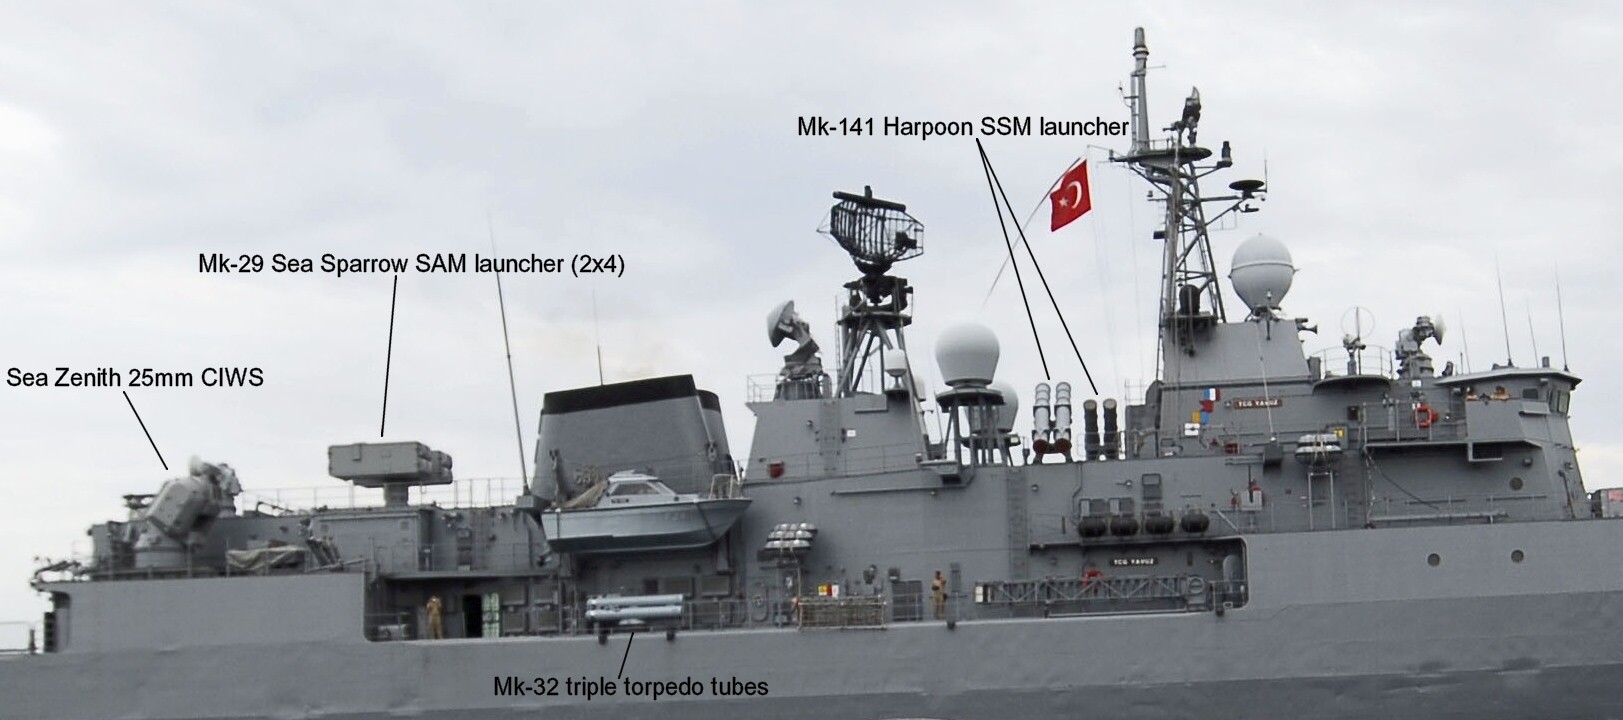 yavuz class meko-200tn frigate turkish navy türk deniz kuvvetleri armament 02 sea zenith ciws rim-7 sea sparrow sam missile